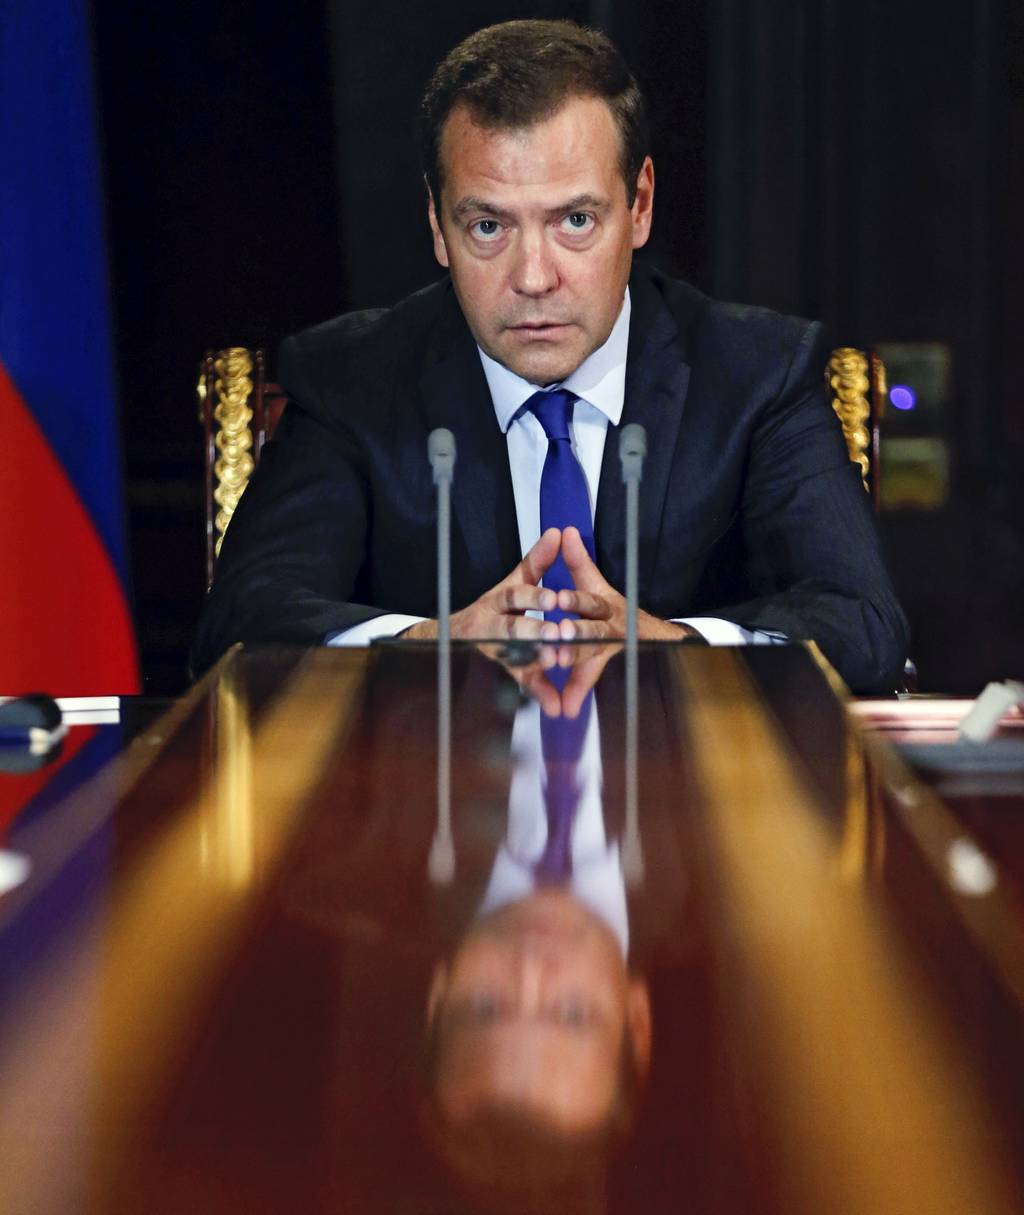 El primer ministro ruso, Dmitry Medvedev, dijo que el veto al equipo ruso es para quitar un rival fuerte de la competencia. (AP)